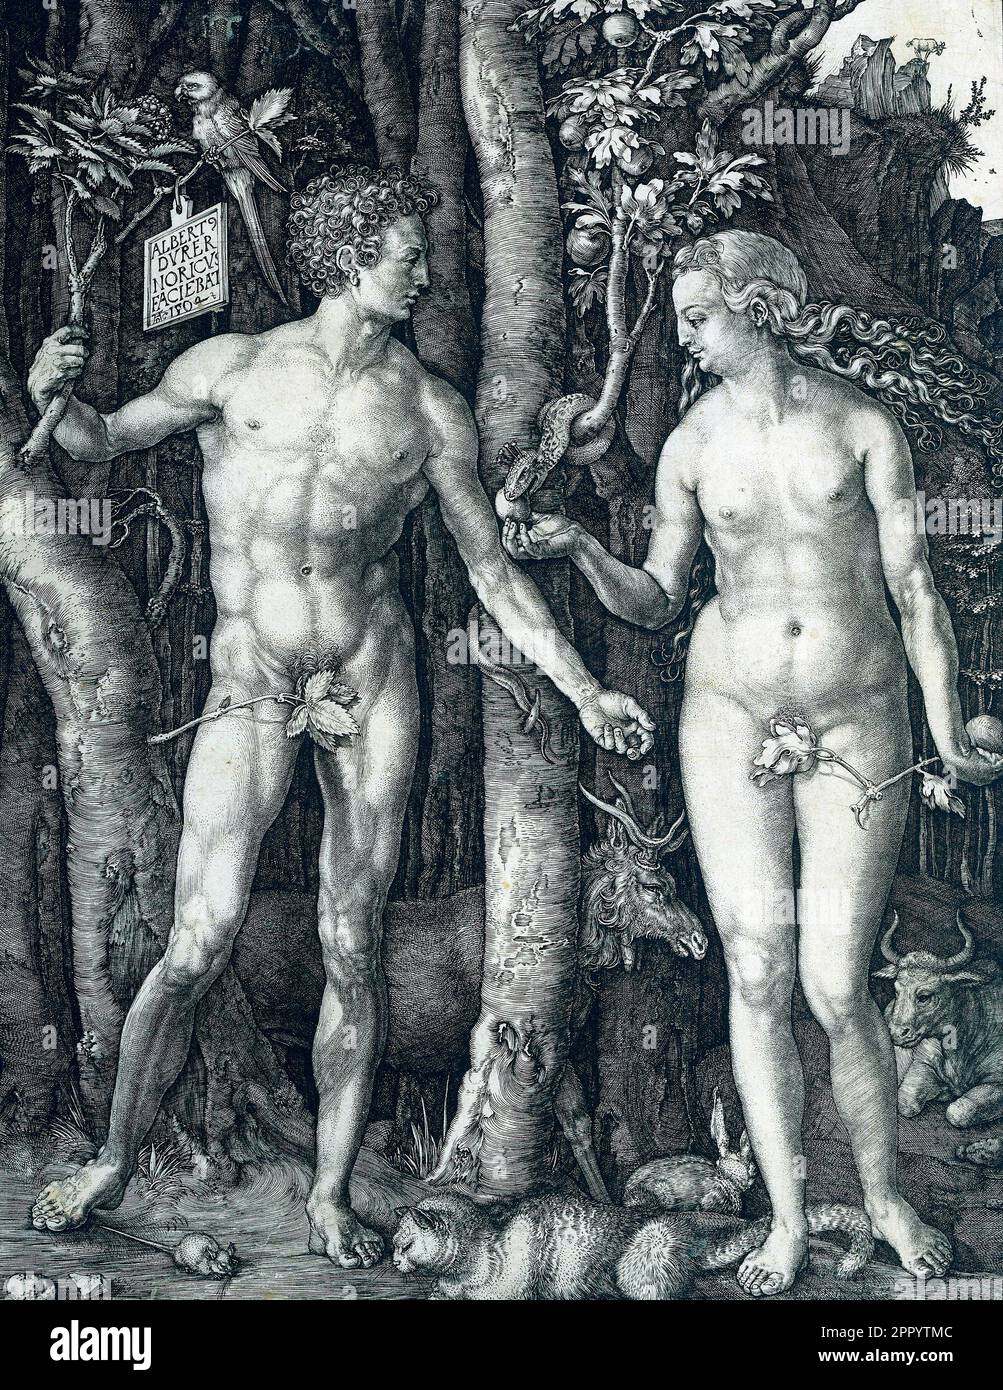 Adam and Eva by Albrecht Dürer, 1504 Stock Photo